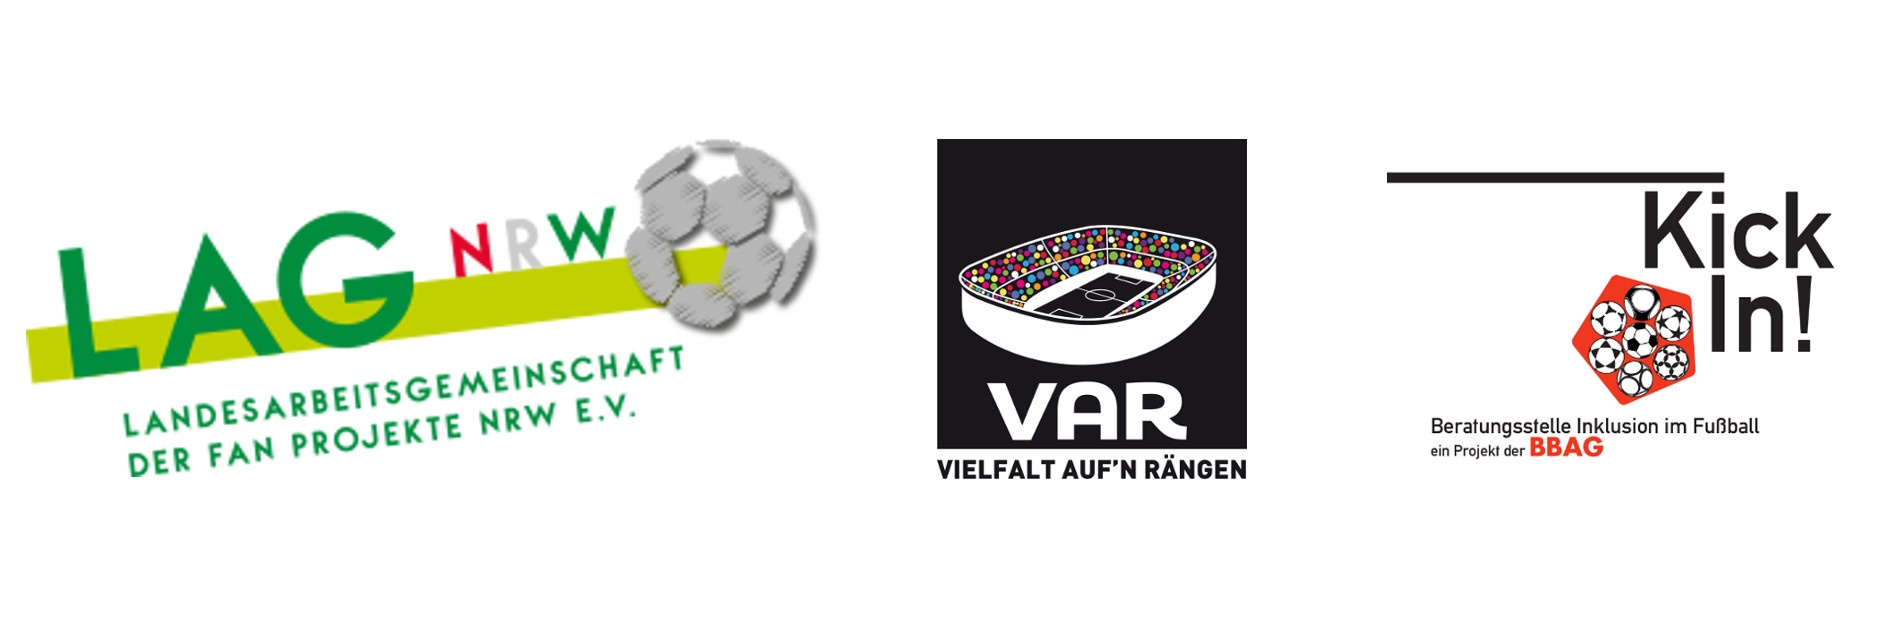 Links: Grünes LAG NRW-Logo mit einem Fußballs. In der Mitte: VAR-Logo bestehend aus einem Stadion-Piktogramm bei dem die Zuschauenden durch bunte Punkte dargestellt werden, ergänzt durch „VAR“ und „Vielfalt auf’n Rängen“_Schriftzuge unterhalb des Stadions. Rechts: Das KickIn!-Logo.